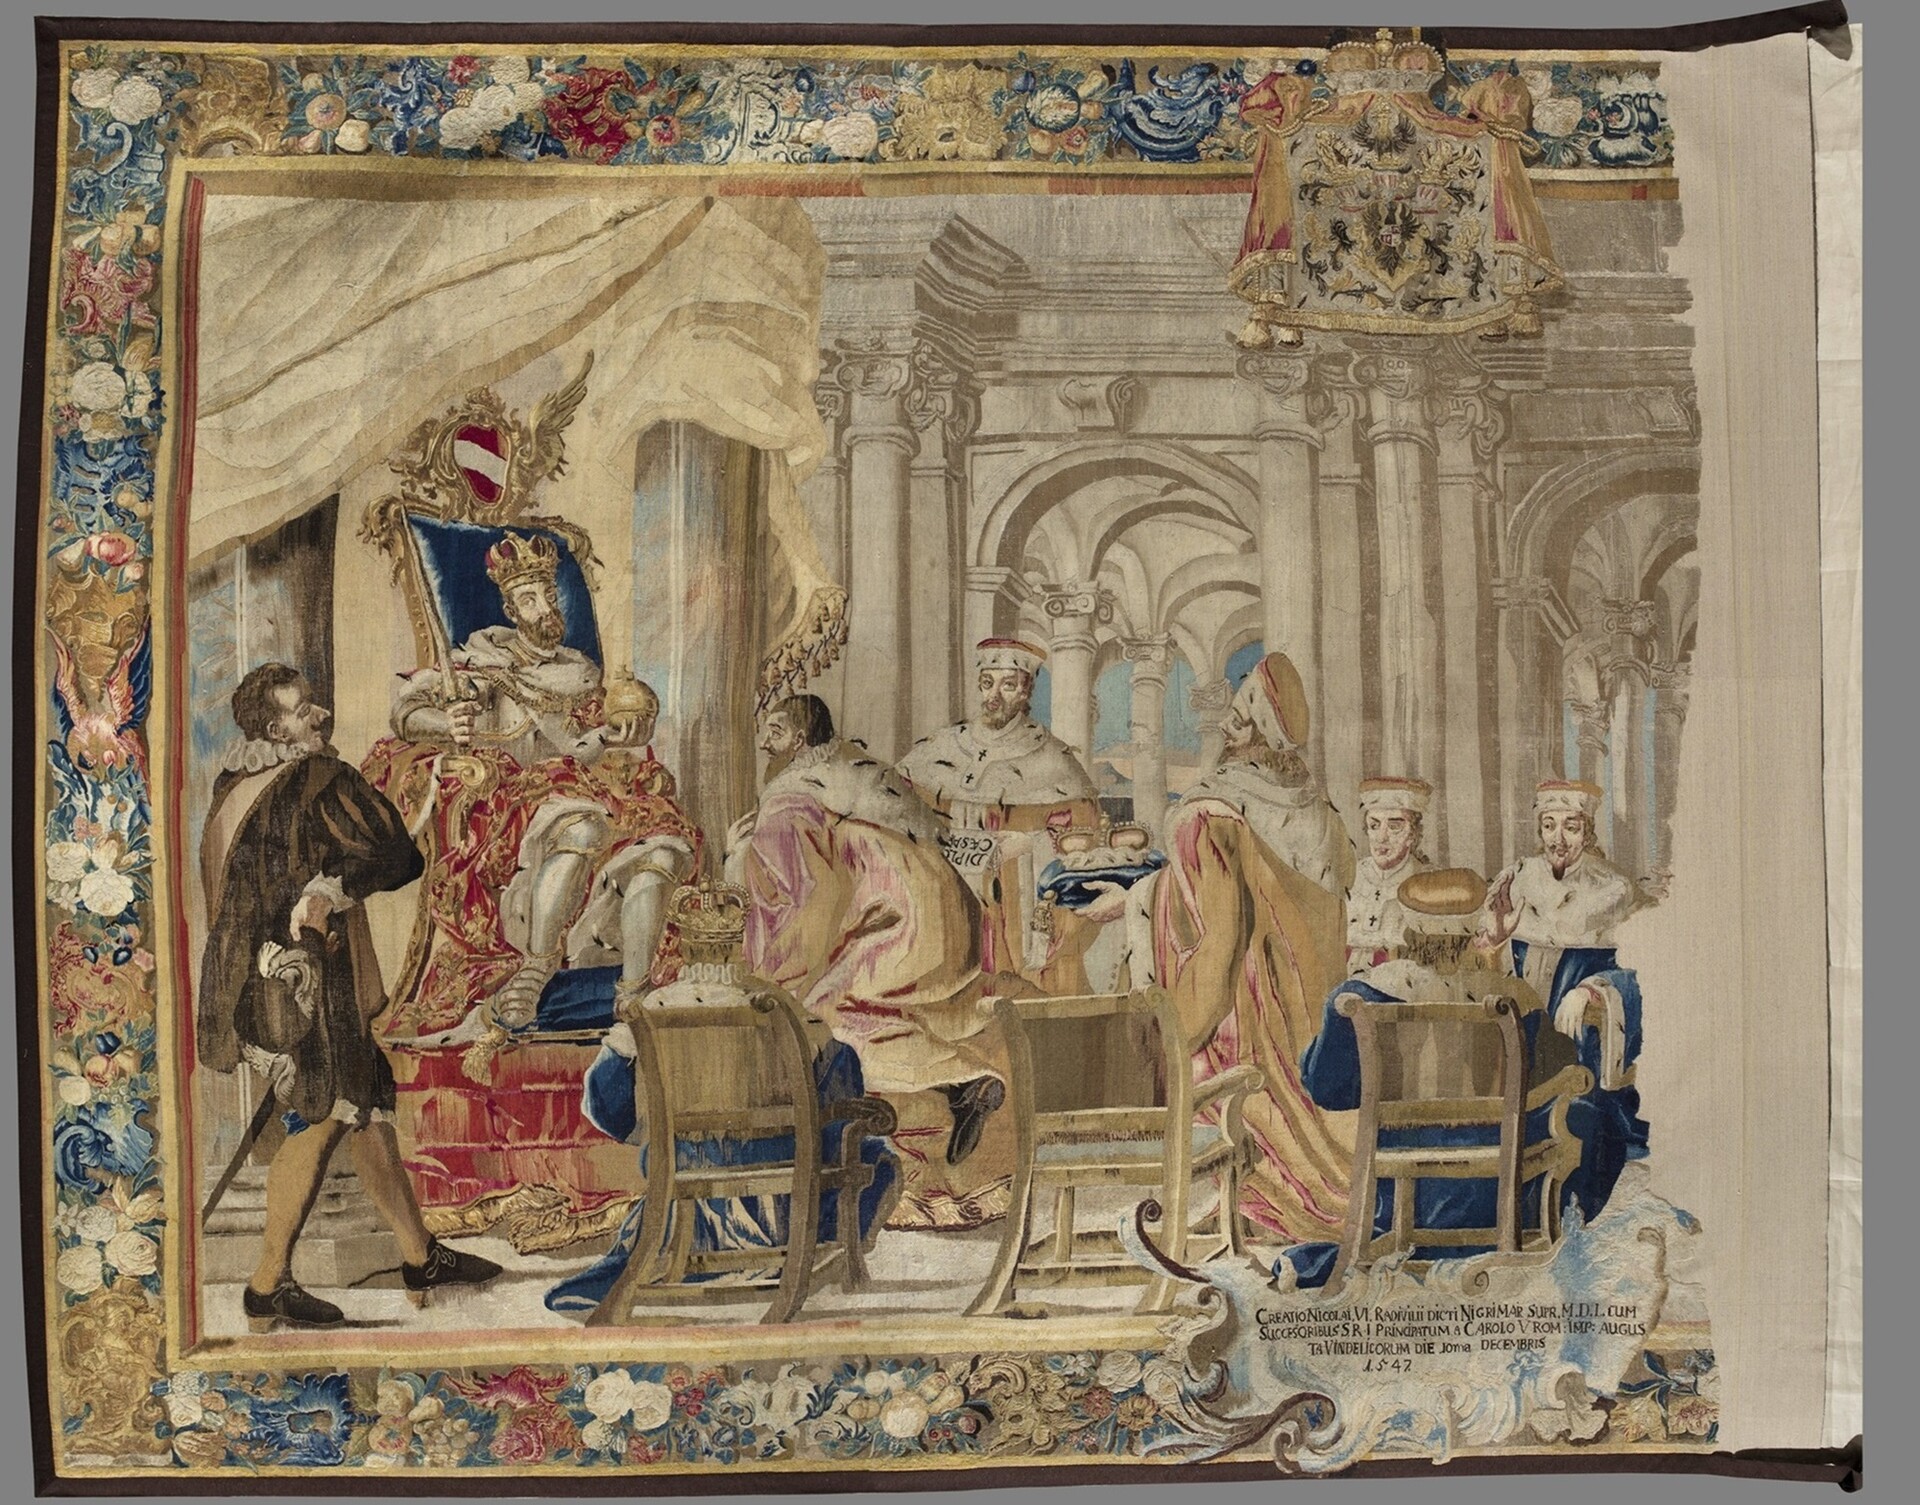  Gobelin ze sceną nadania tytułu książęcego Mikołajowi VI Radziwiłłowi, połowa XVIII w.; zbiory Muzeum Narodowego w Warszawie 